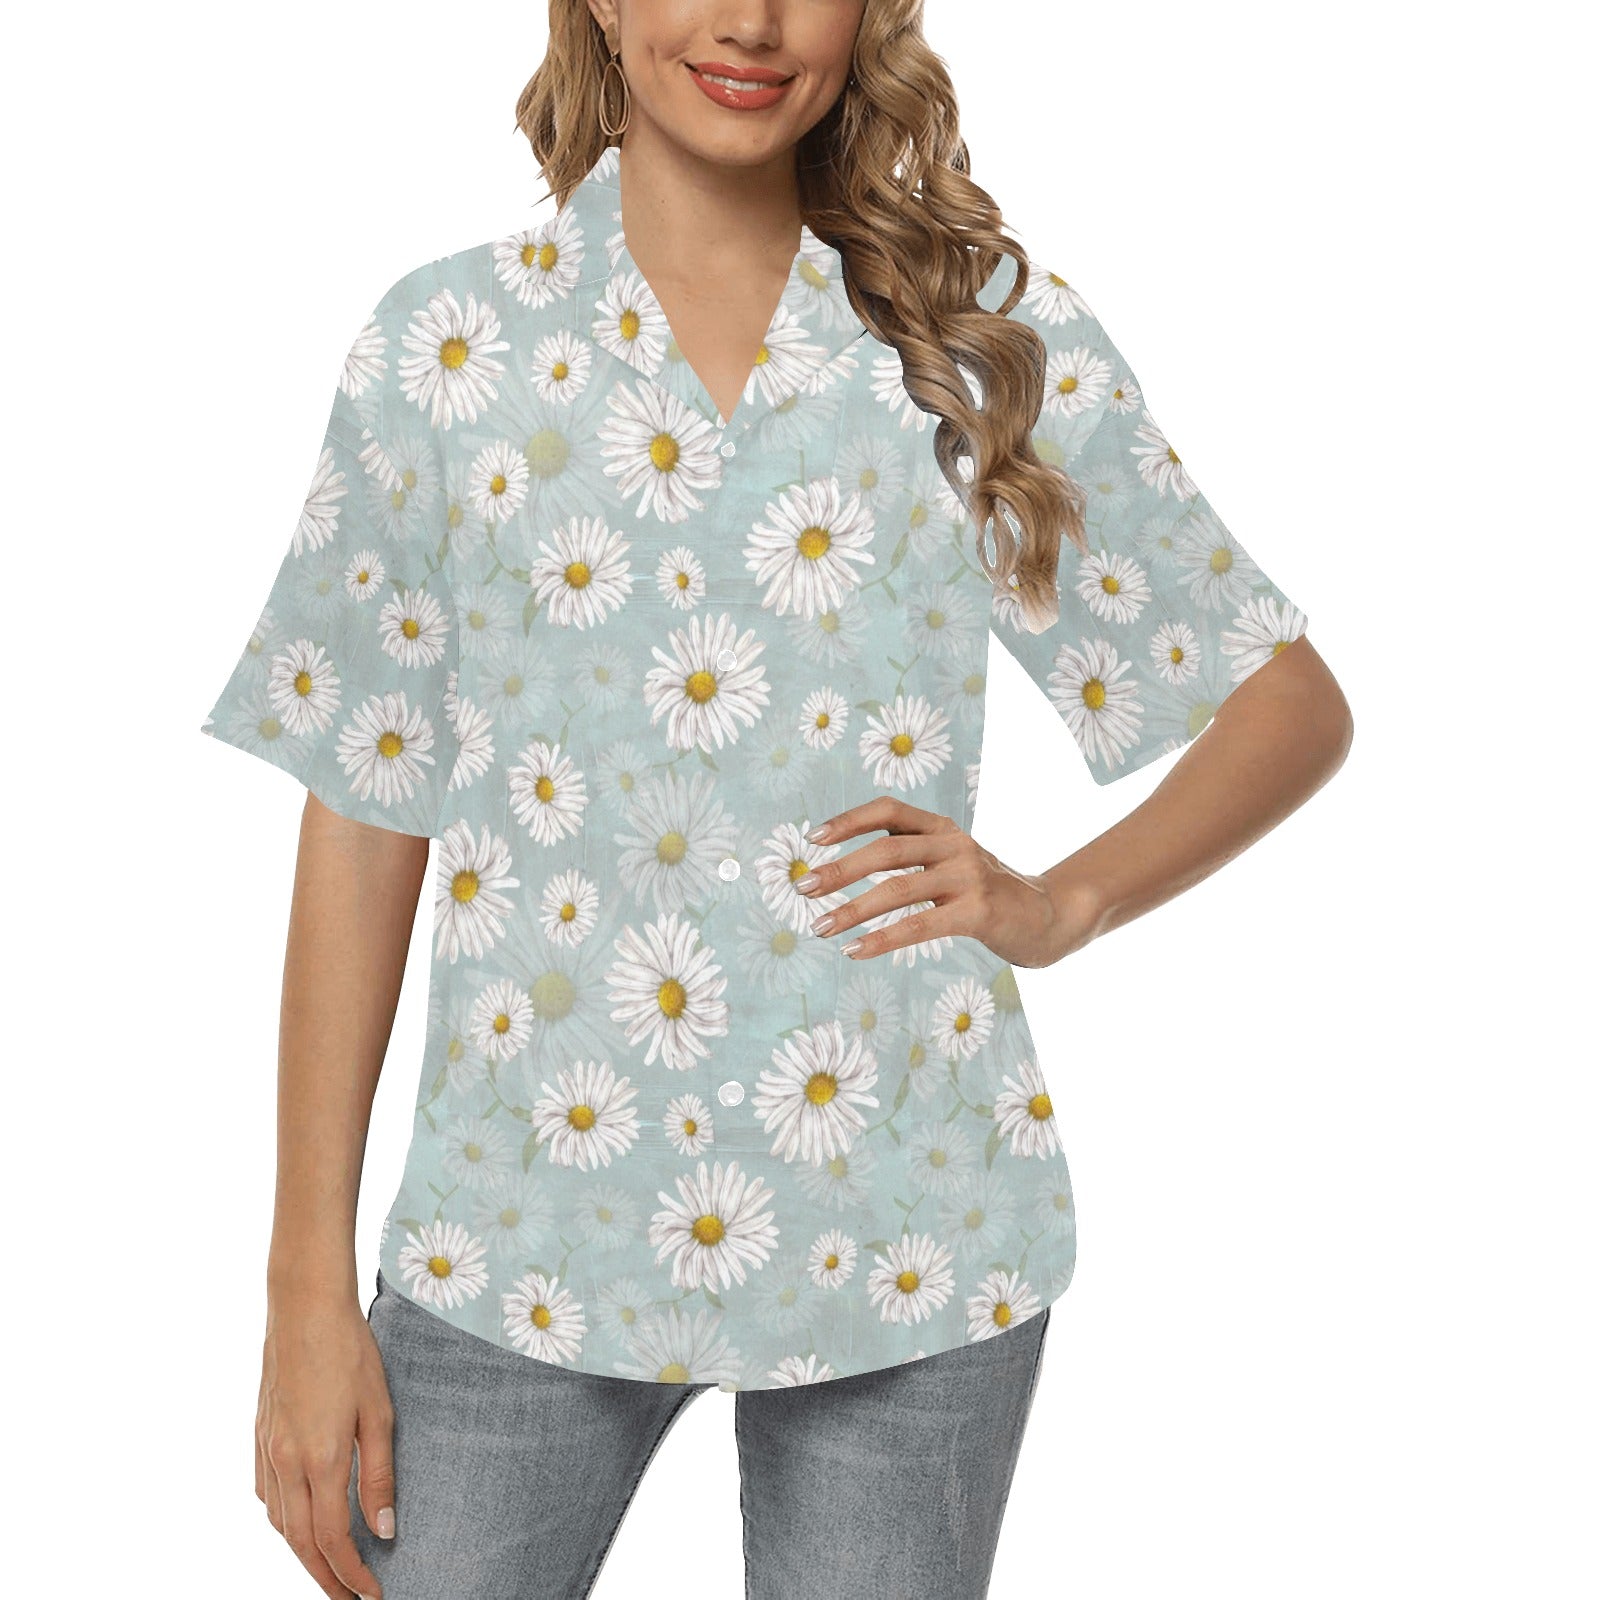 Daisy Pattern Print Design DS012 Women's Hawaiian Shirt